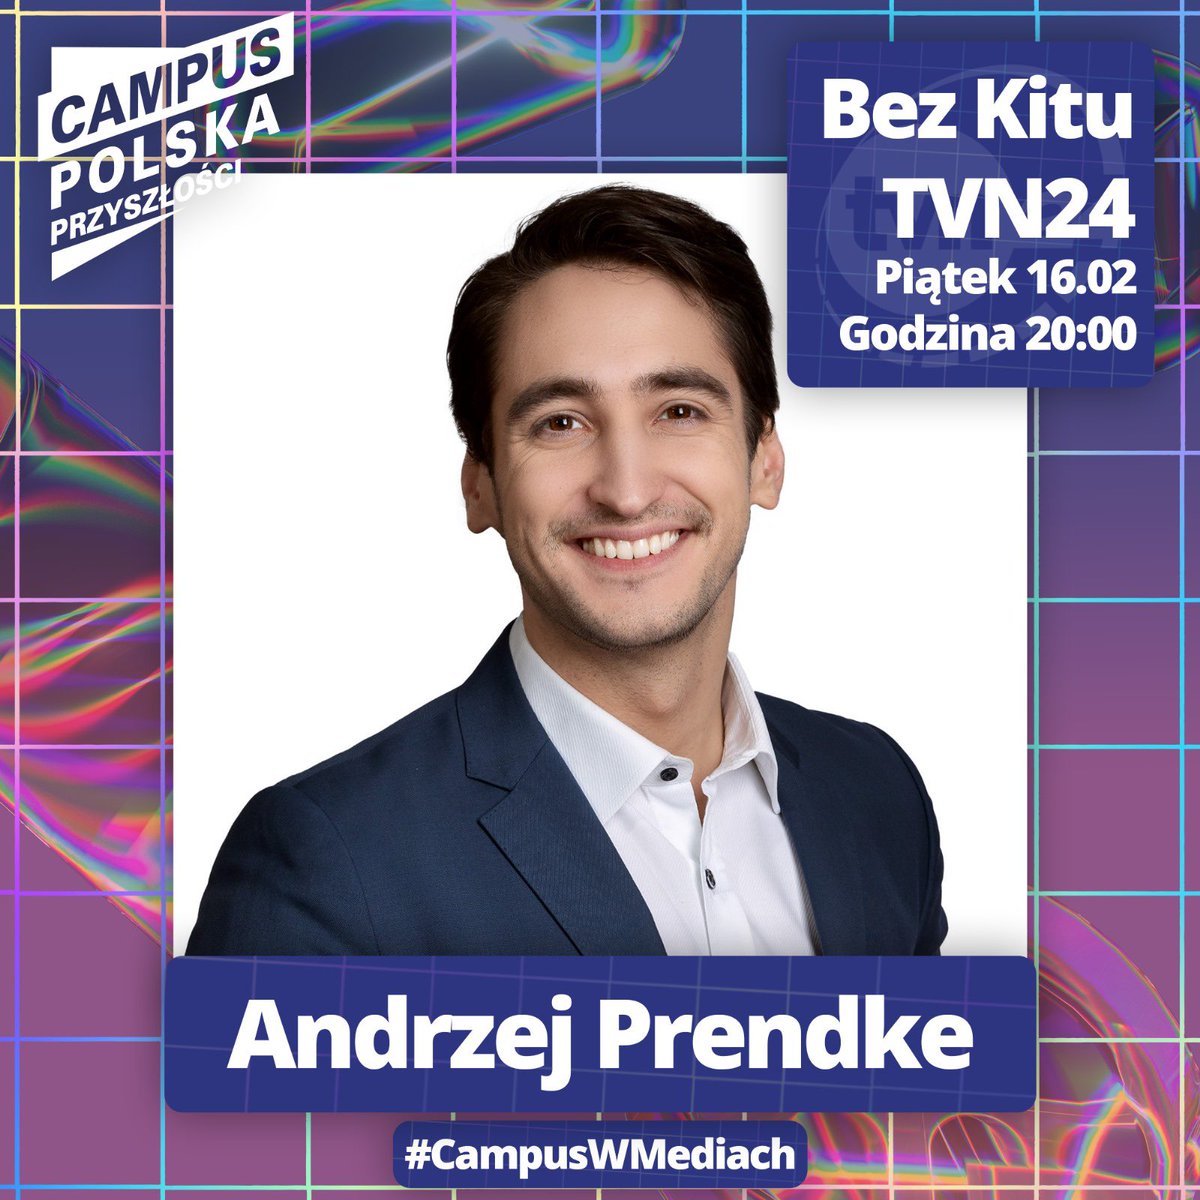 Już dzisiaj o 20 @A_Prendke będzie reprezentować Campus w programie Bez Kitu! Zapraszamy do oglądania!😍